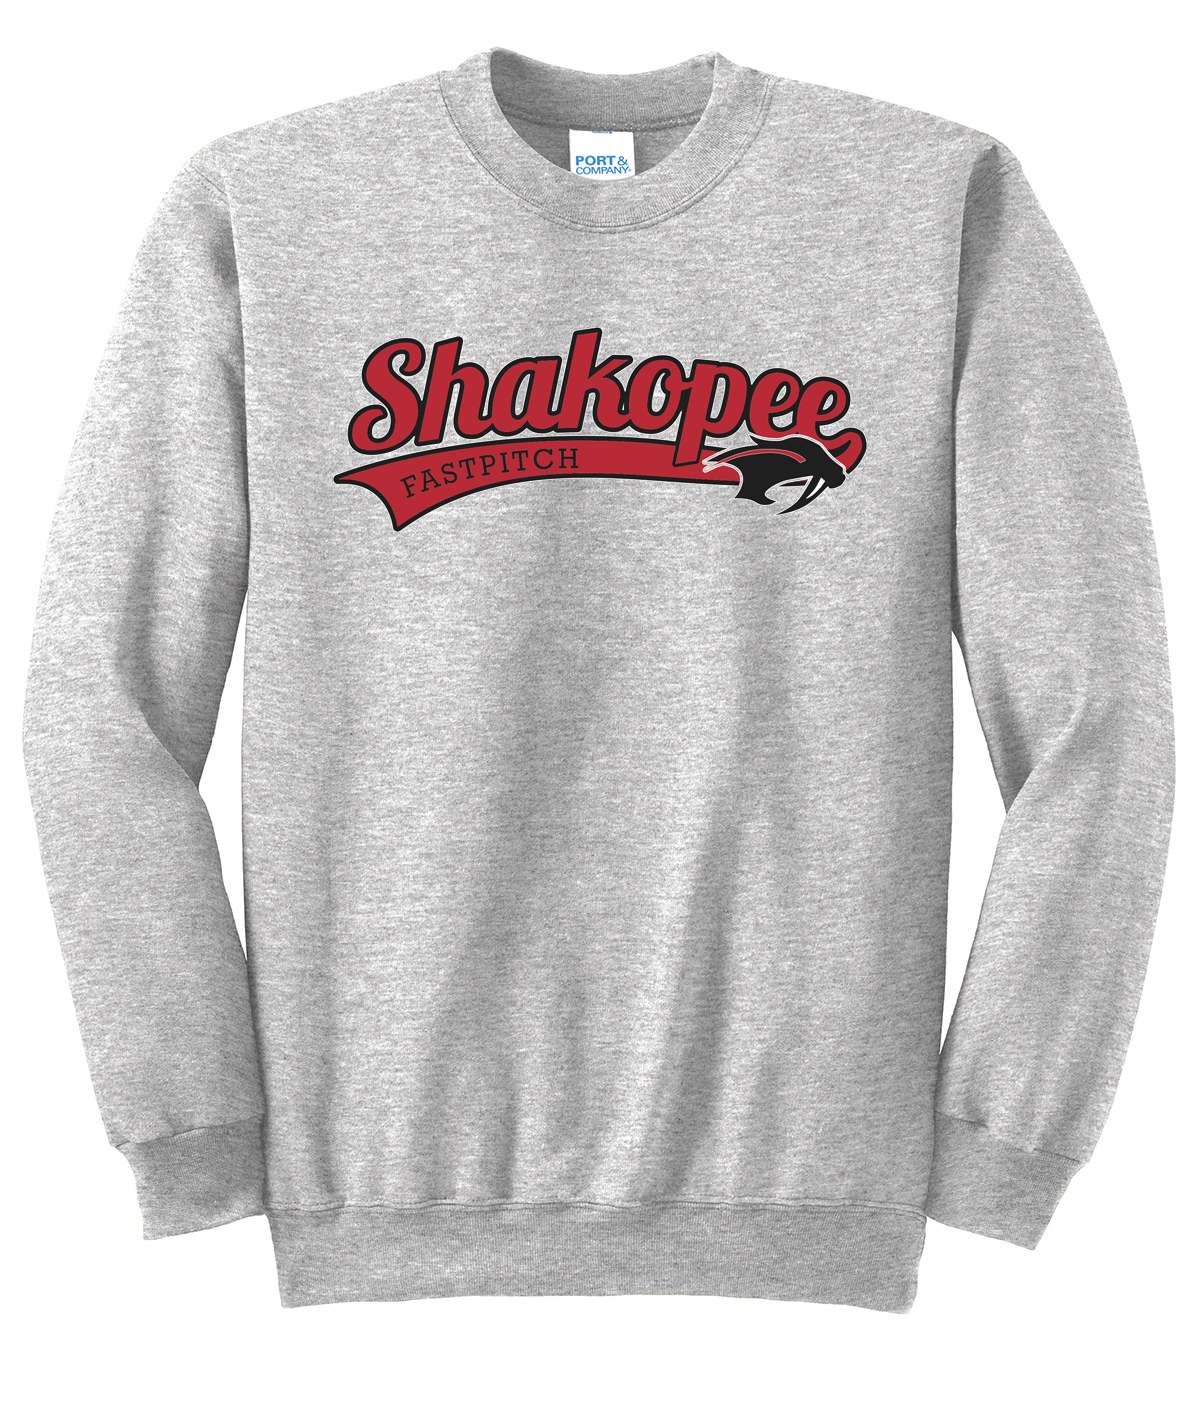 Shakopee Softball Crew Neck Sweater